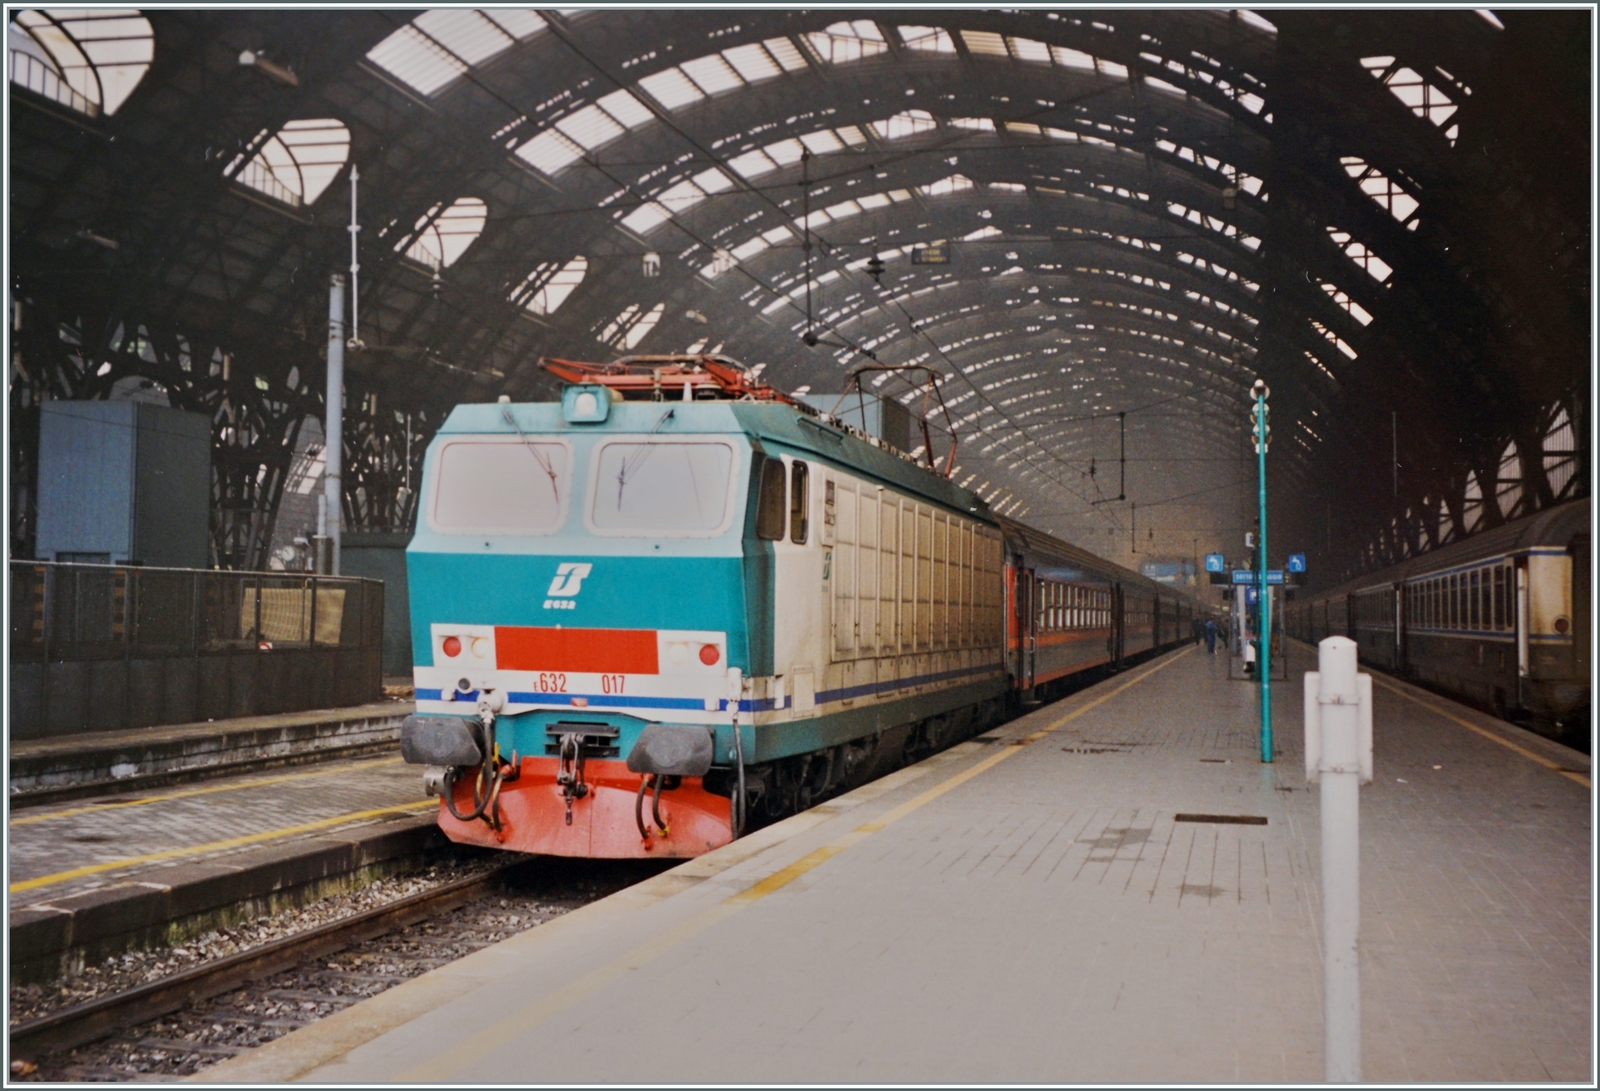 Die FS Trenitalia E 632 017 trägt die nicht ganz so überzeugende, damals neue Farbgebung  Verde/Bianca . Die Lok wartet mit einem Eilzug in Milano auf die Abfahrt nach Torino Porta Nuova. 

Analogbild vom Februar 1999 